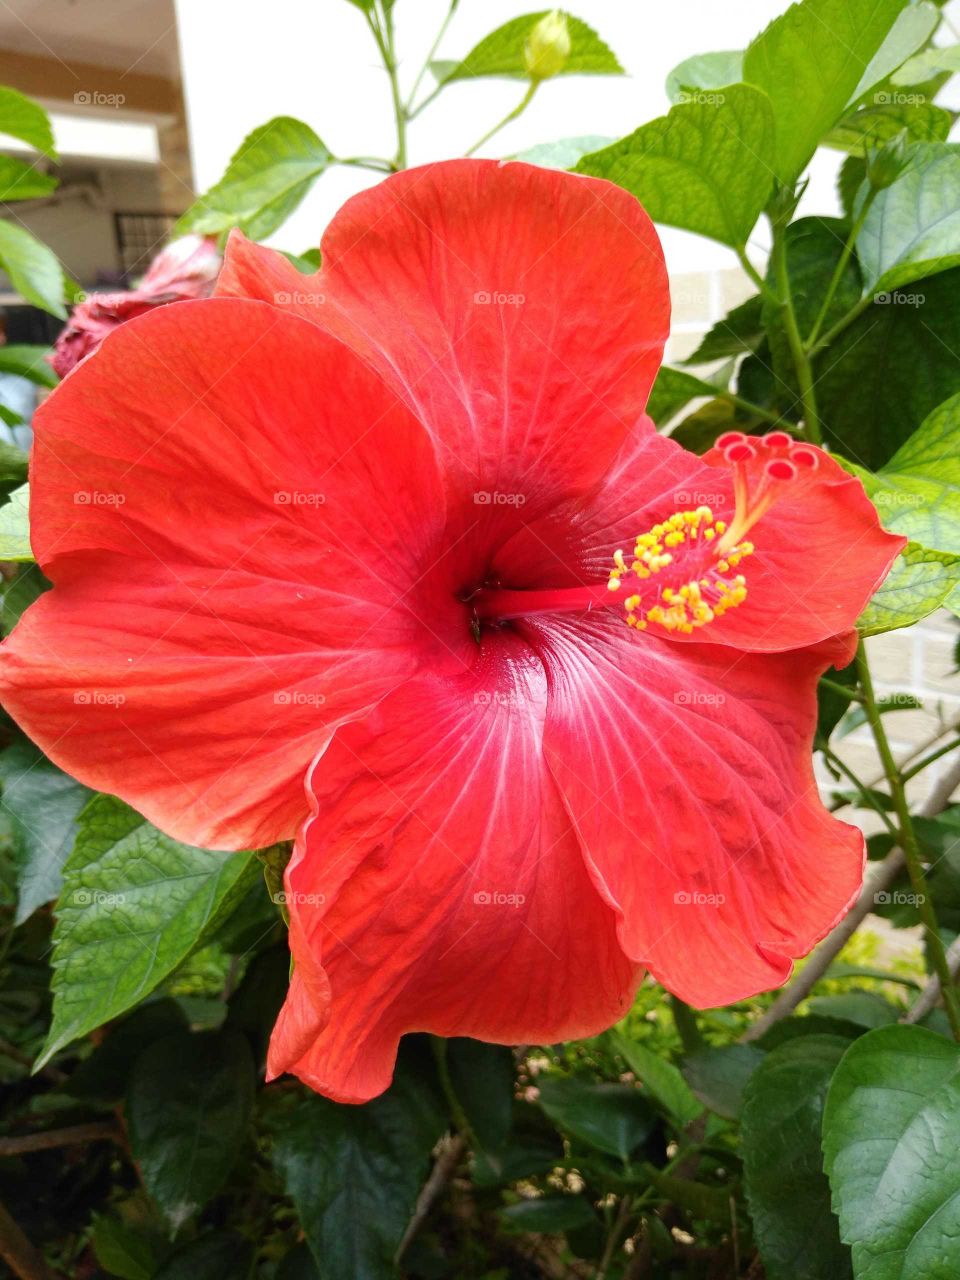 huge big red hibiscus flower in my garden